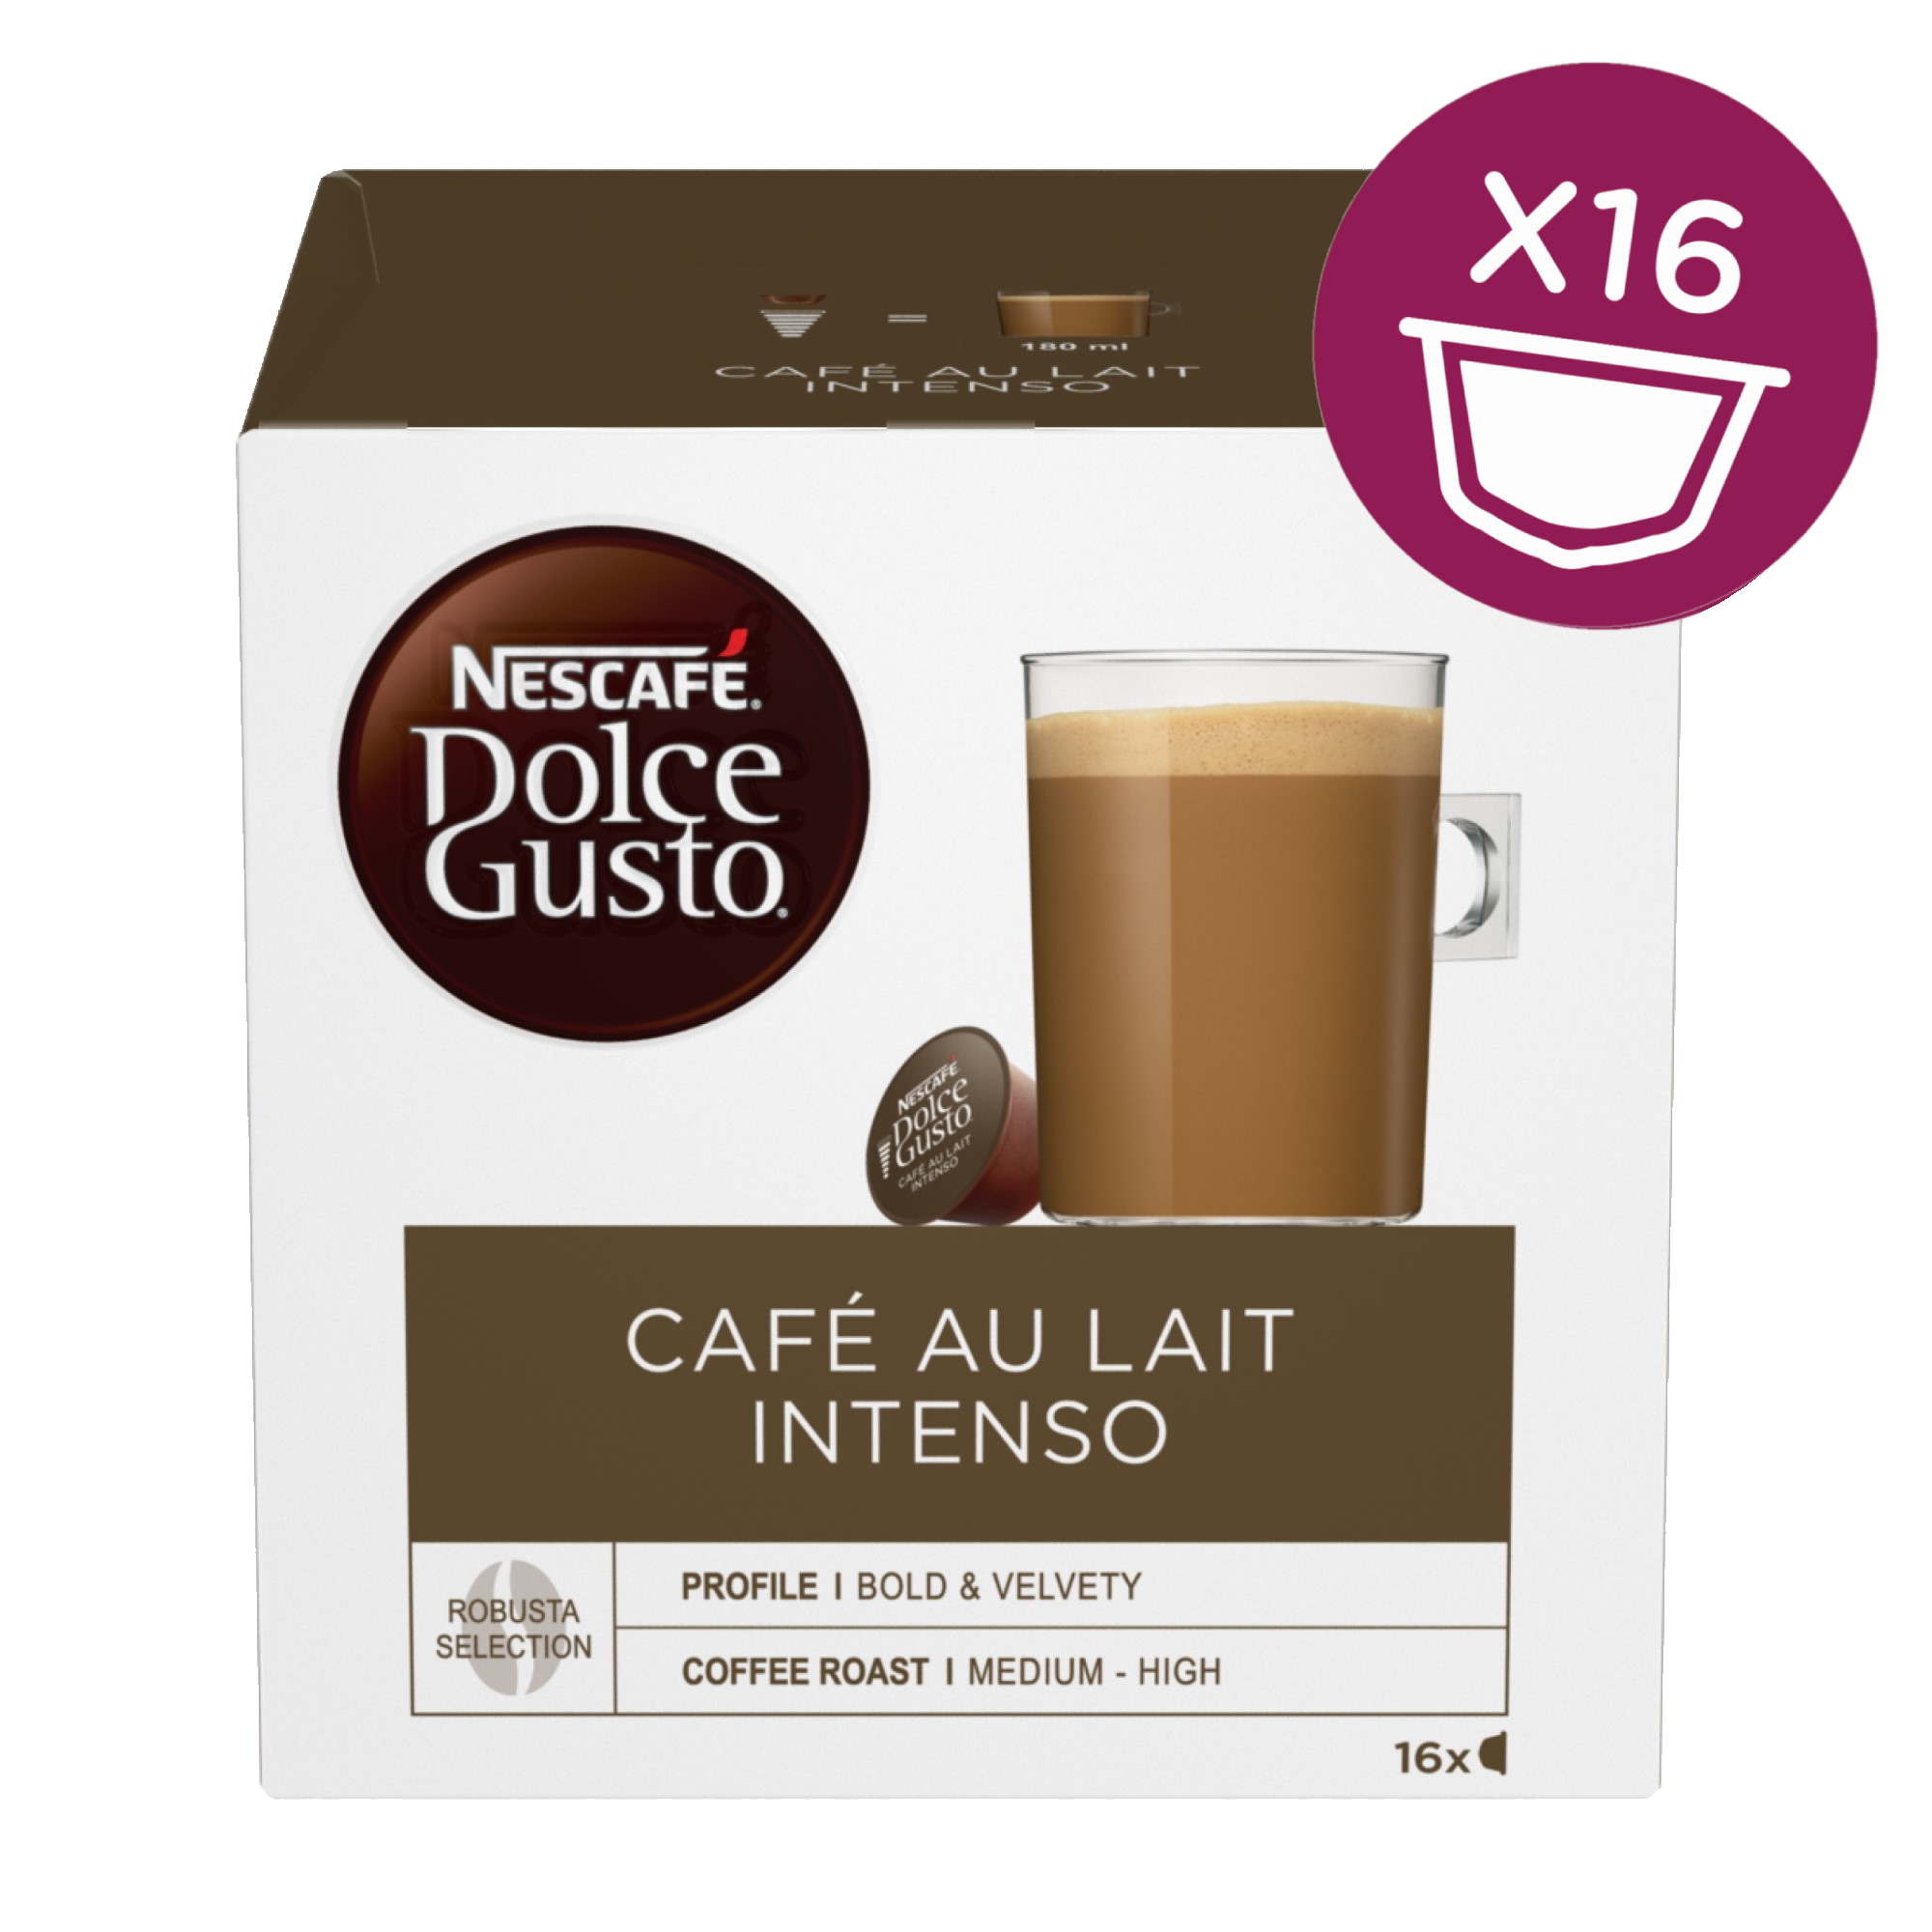 NESCAFÉ Dolce Gusto Café au Lait Intenso, Nescafe